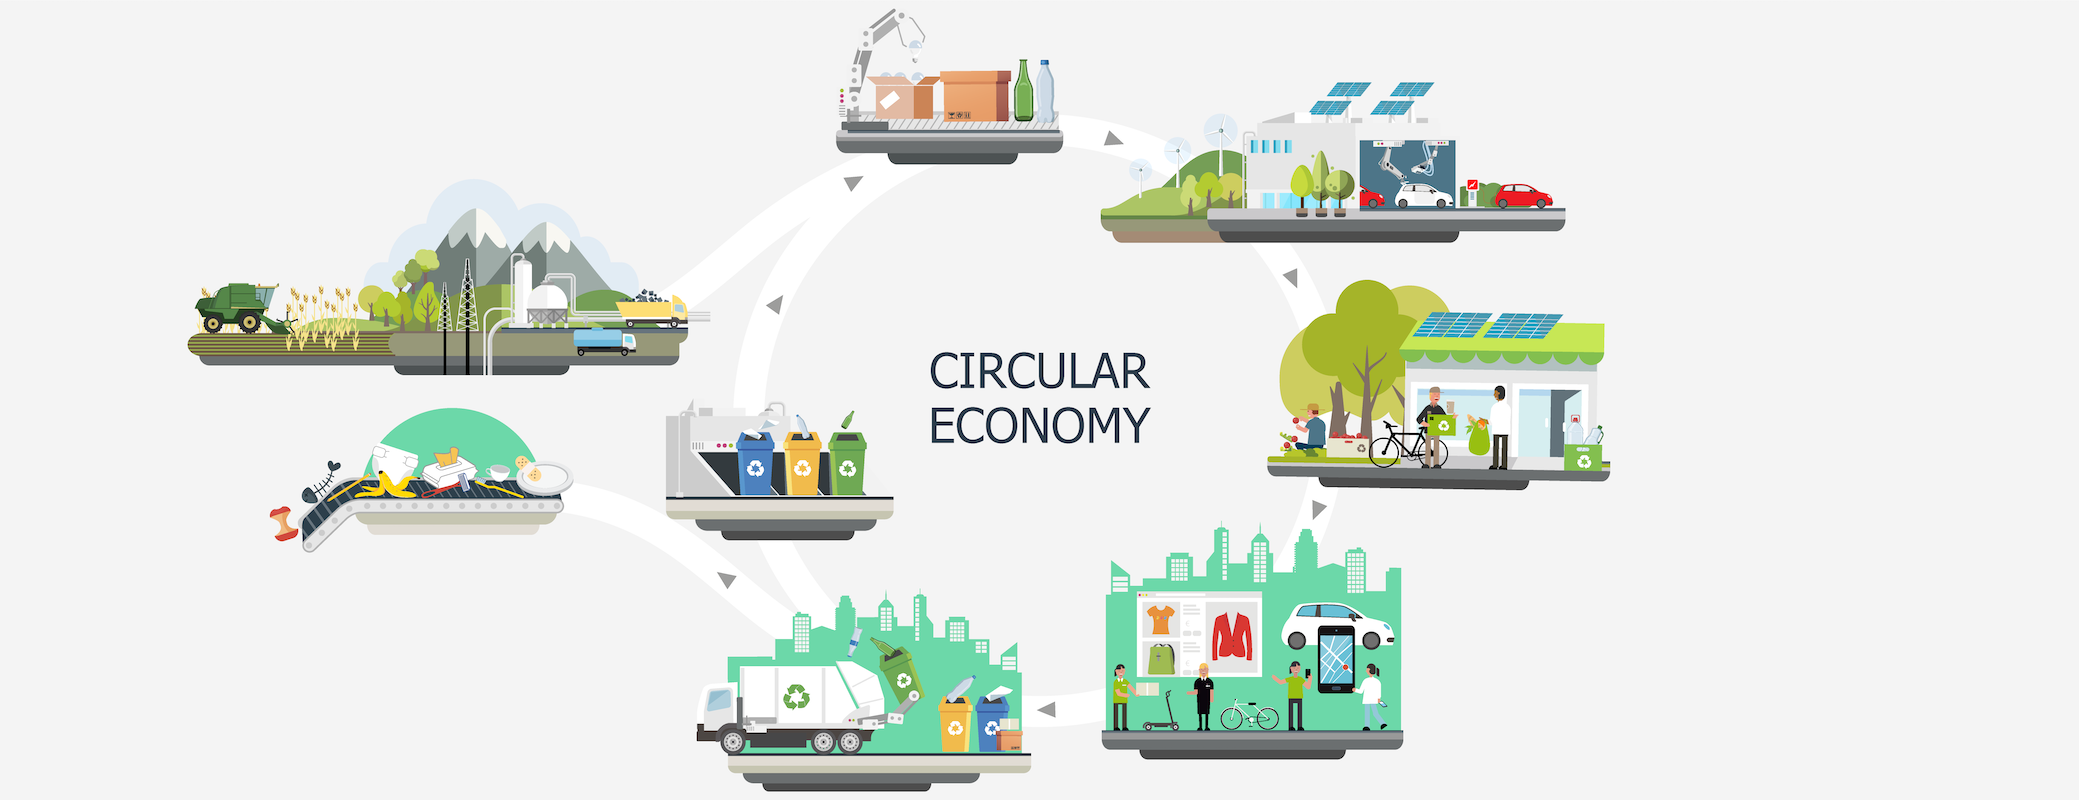 Economía circular infografía